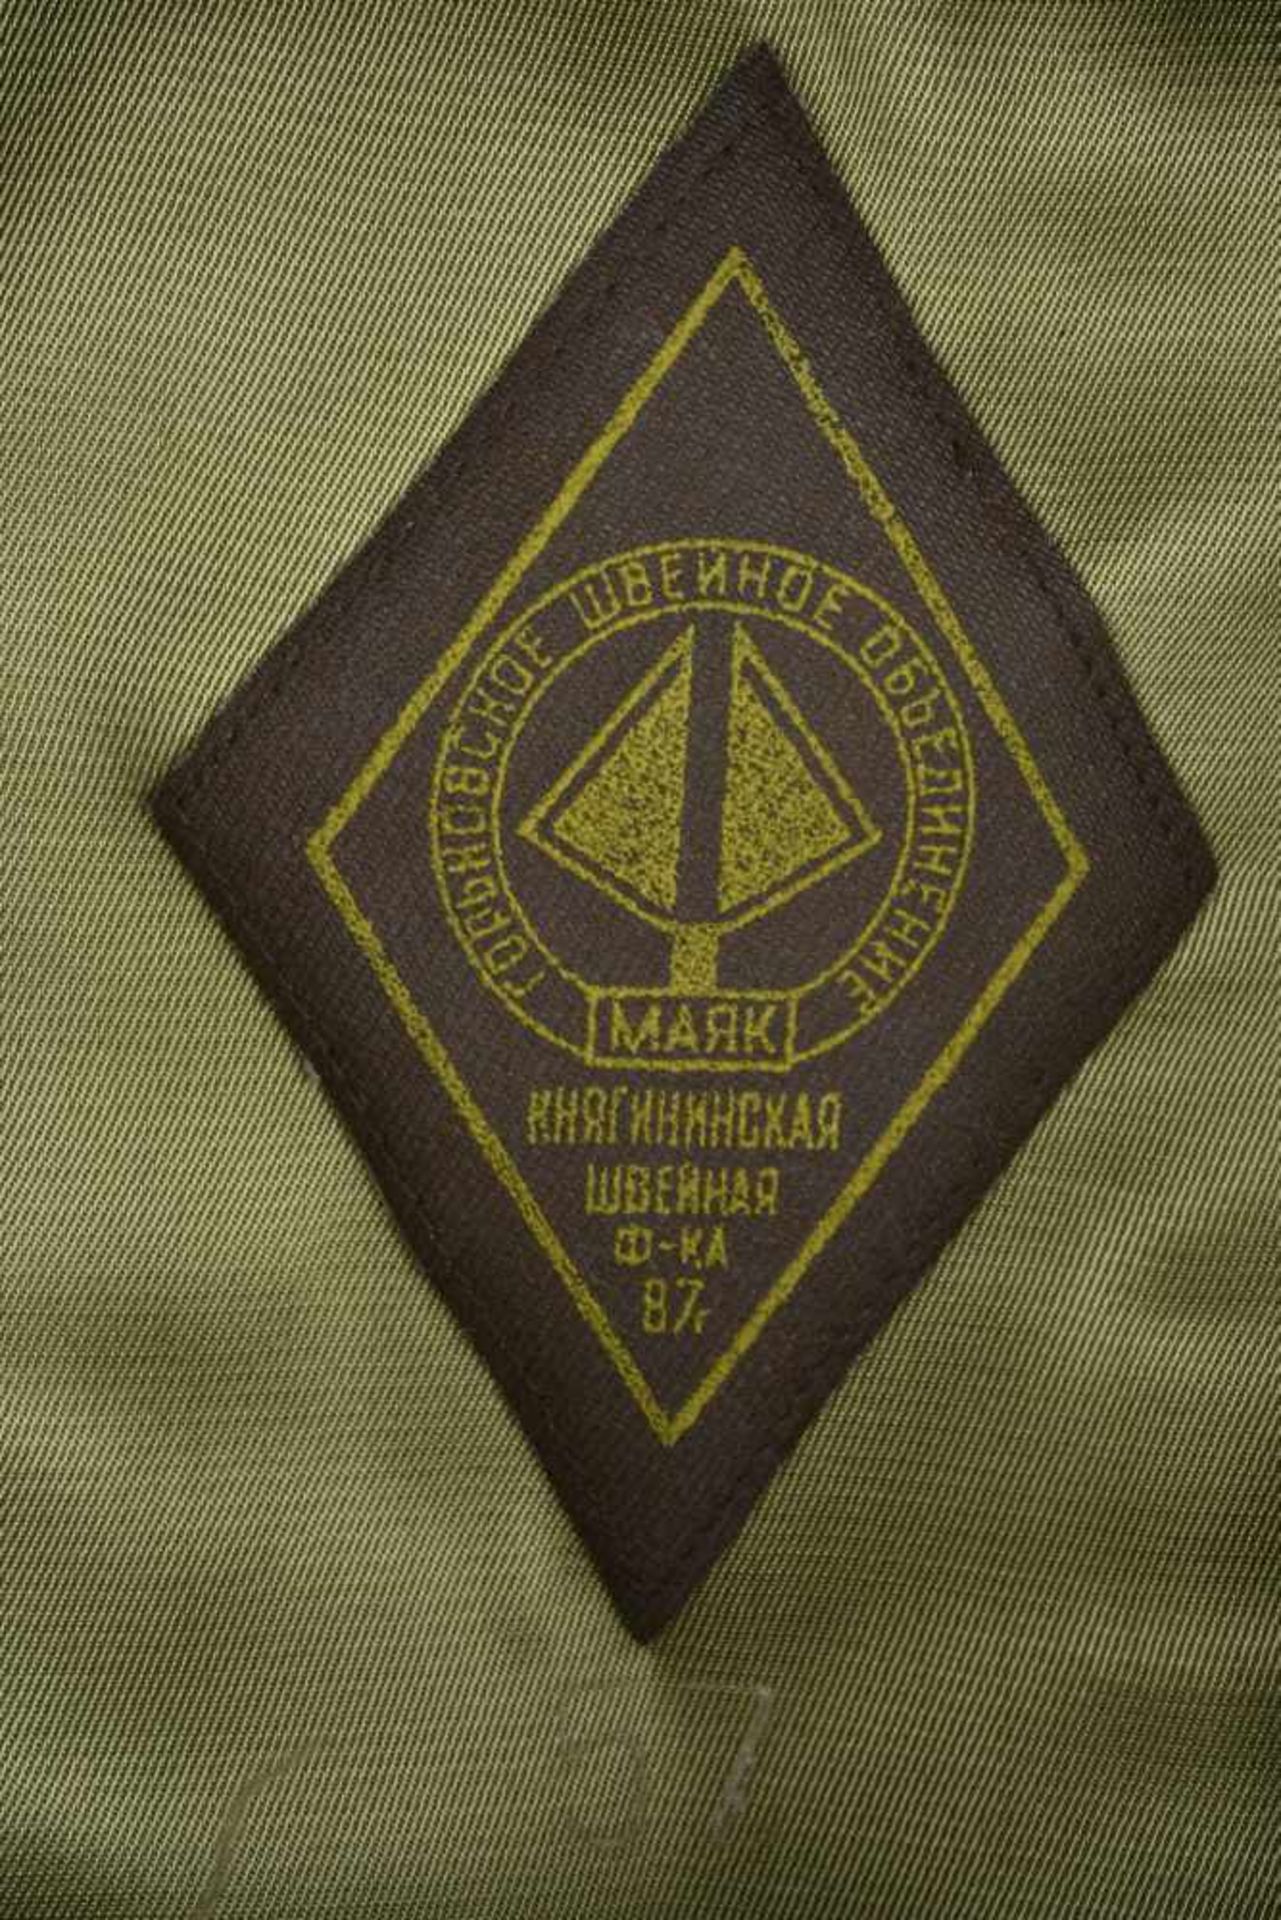 Casquette combat officier soviétique En tissu kaki, insigne métallique. Jugulaire complète. - Image 4 of 4